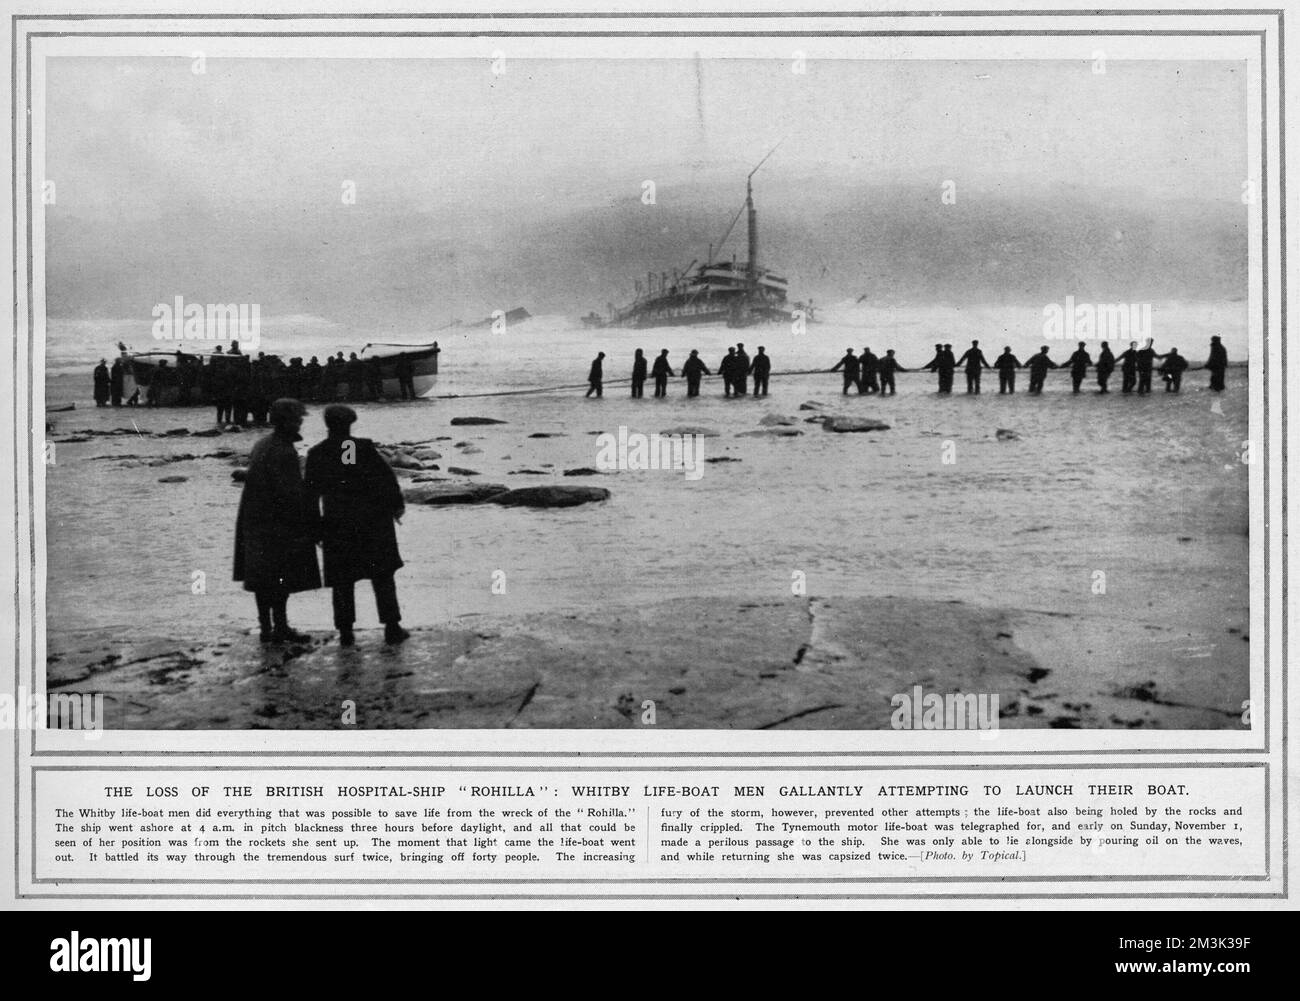 La perdita della nave britannica ospedale, Rohilla: Whitby Life-boat uomini che tentano di lanciare la loro barca. 1914 Foto Stock